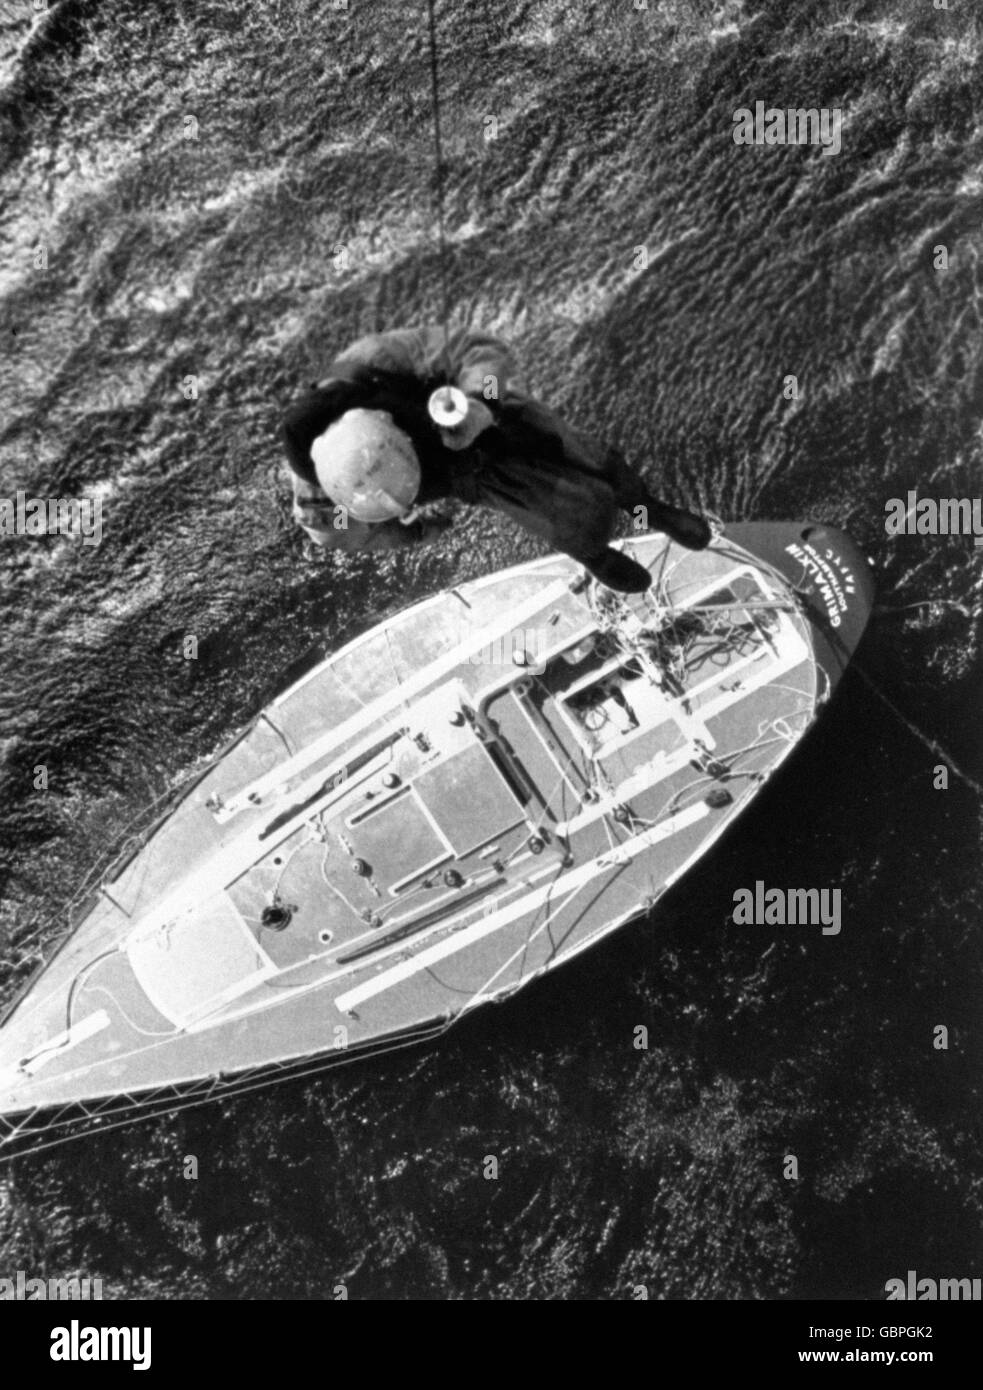 Ein Hubschrauber-Crewman hängt an einer Winde, um die zerschlagene Yacht Grimalkin nach dem Fastnet-Rennunglück auf mögliche Überlebende zu überprüfen. Stockfoto